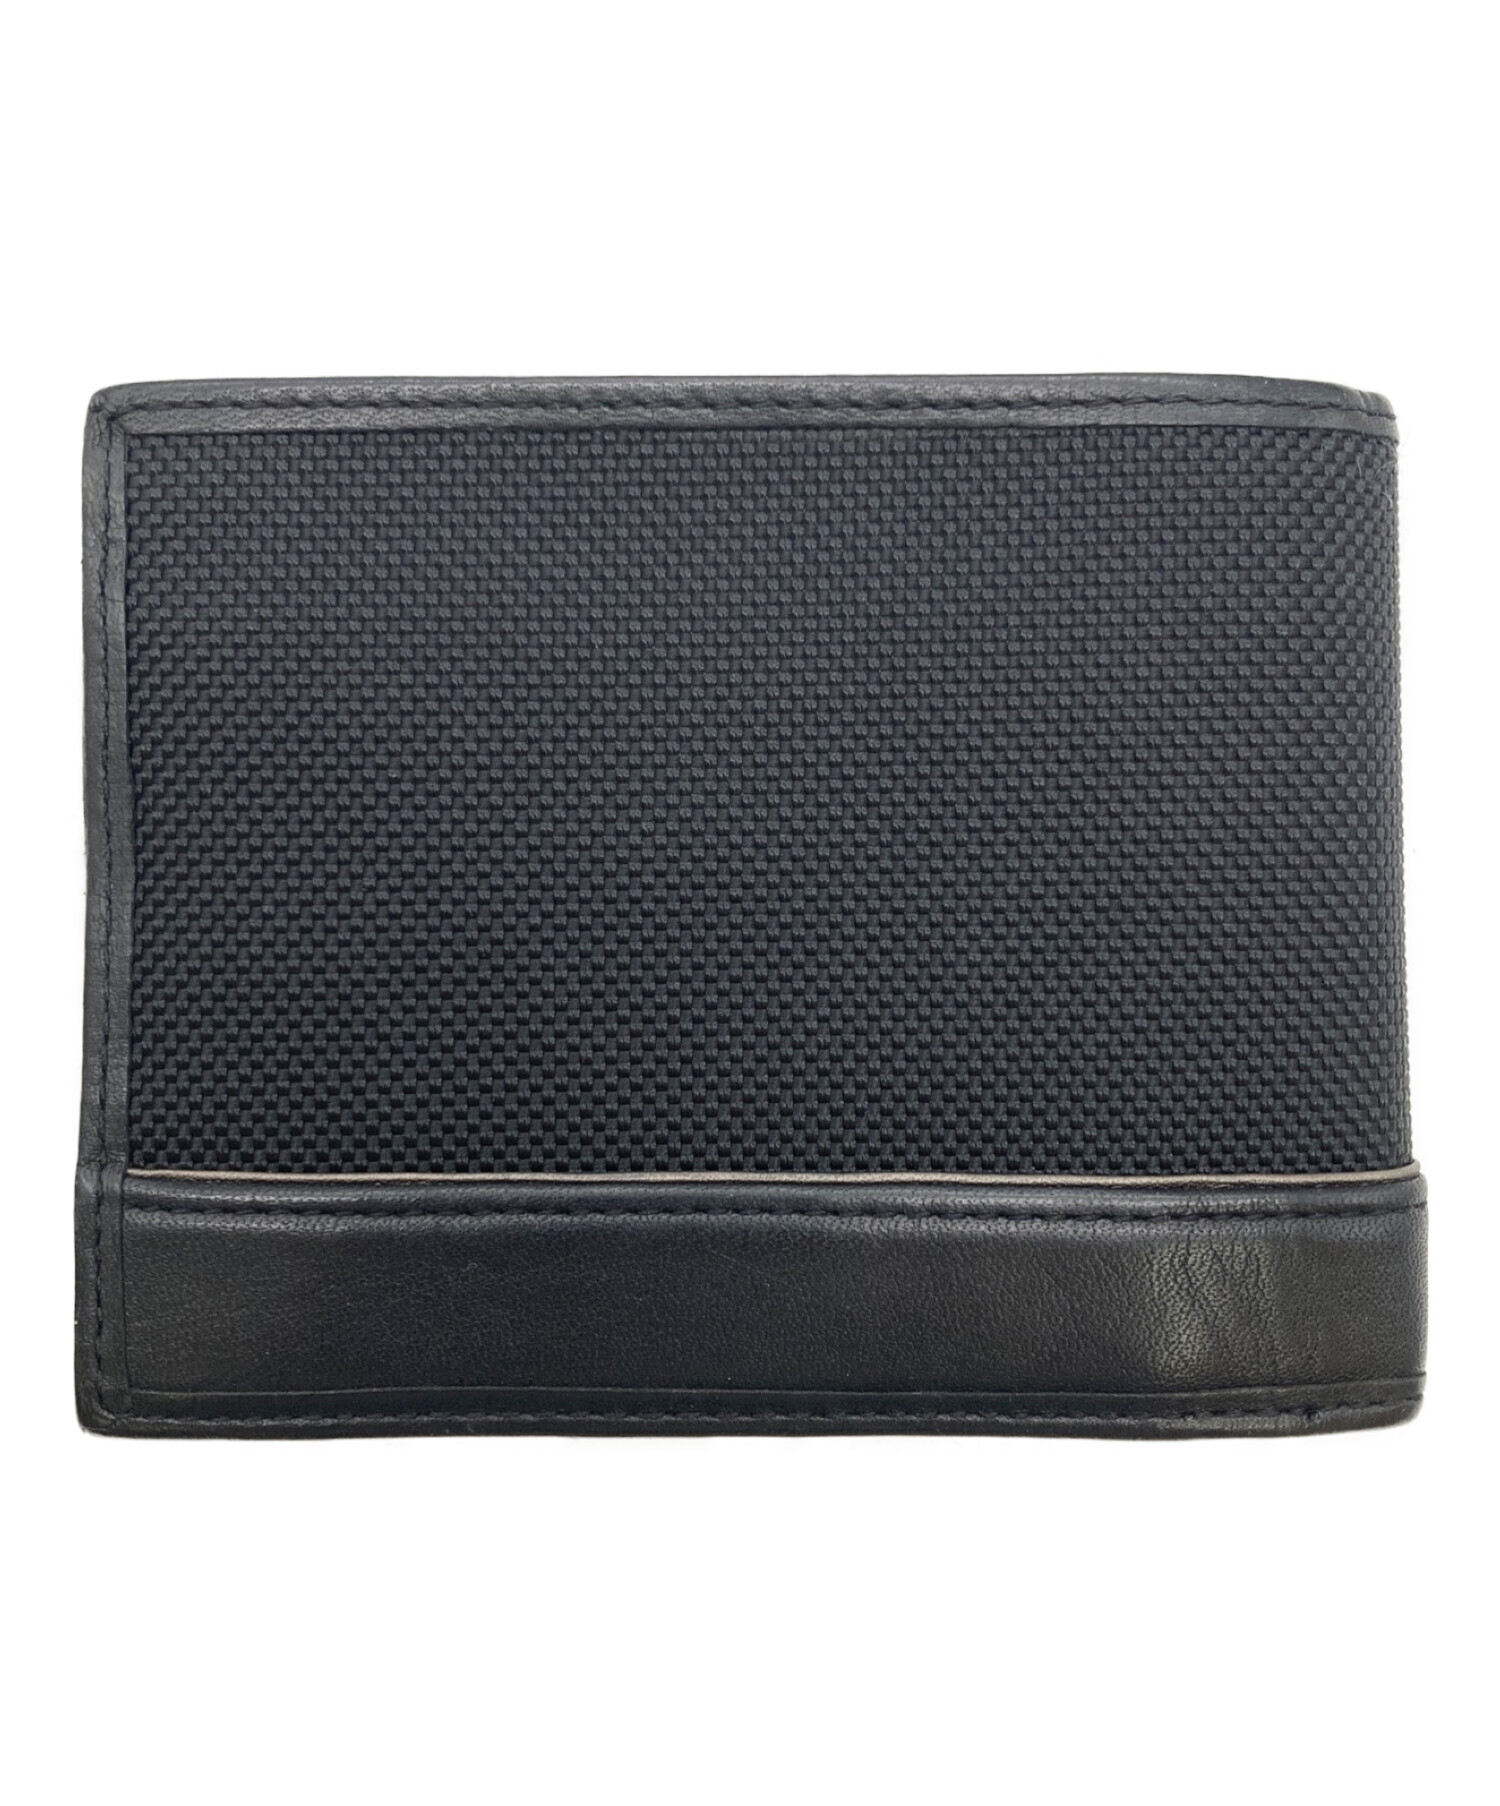 TUMI (トゥミ) 2つ折り財布 ブラック